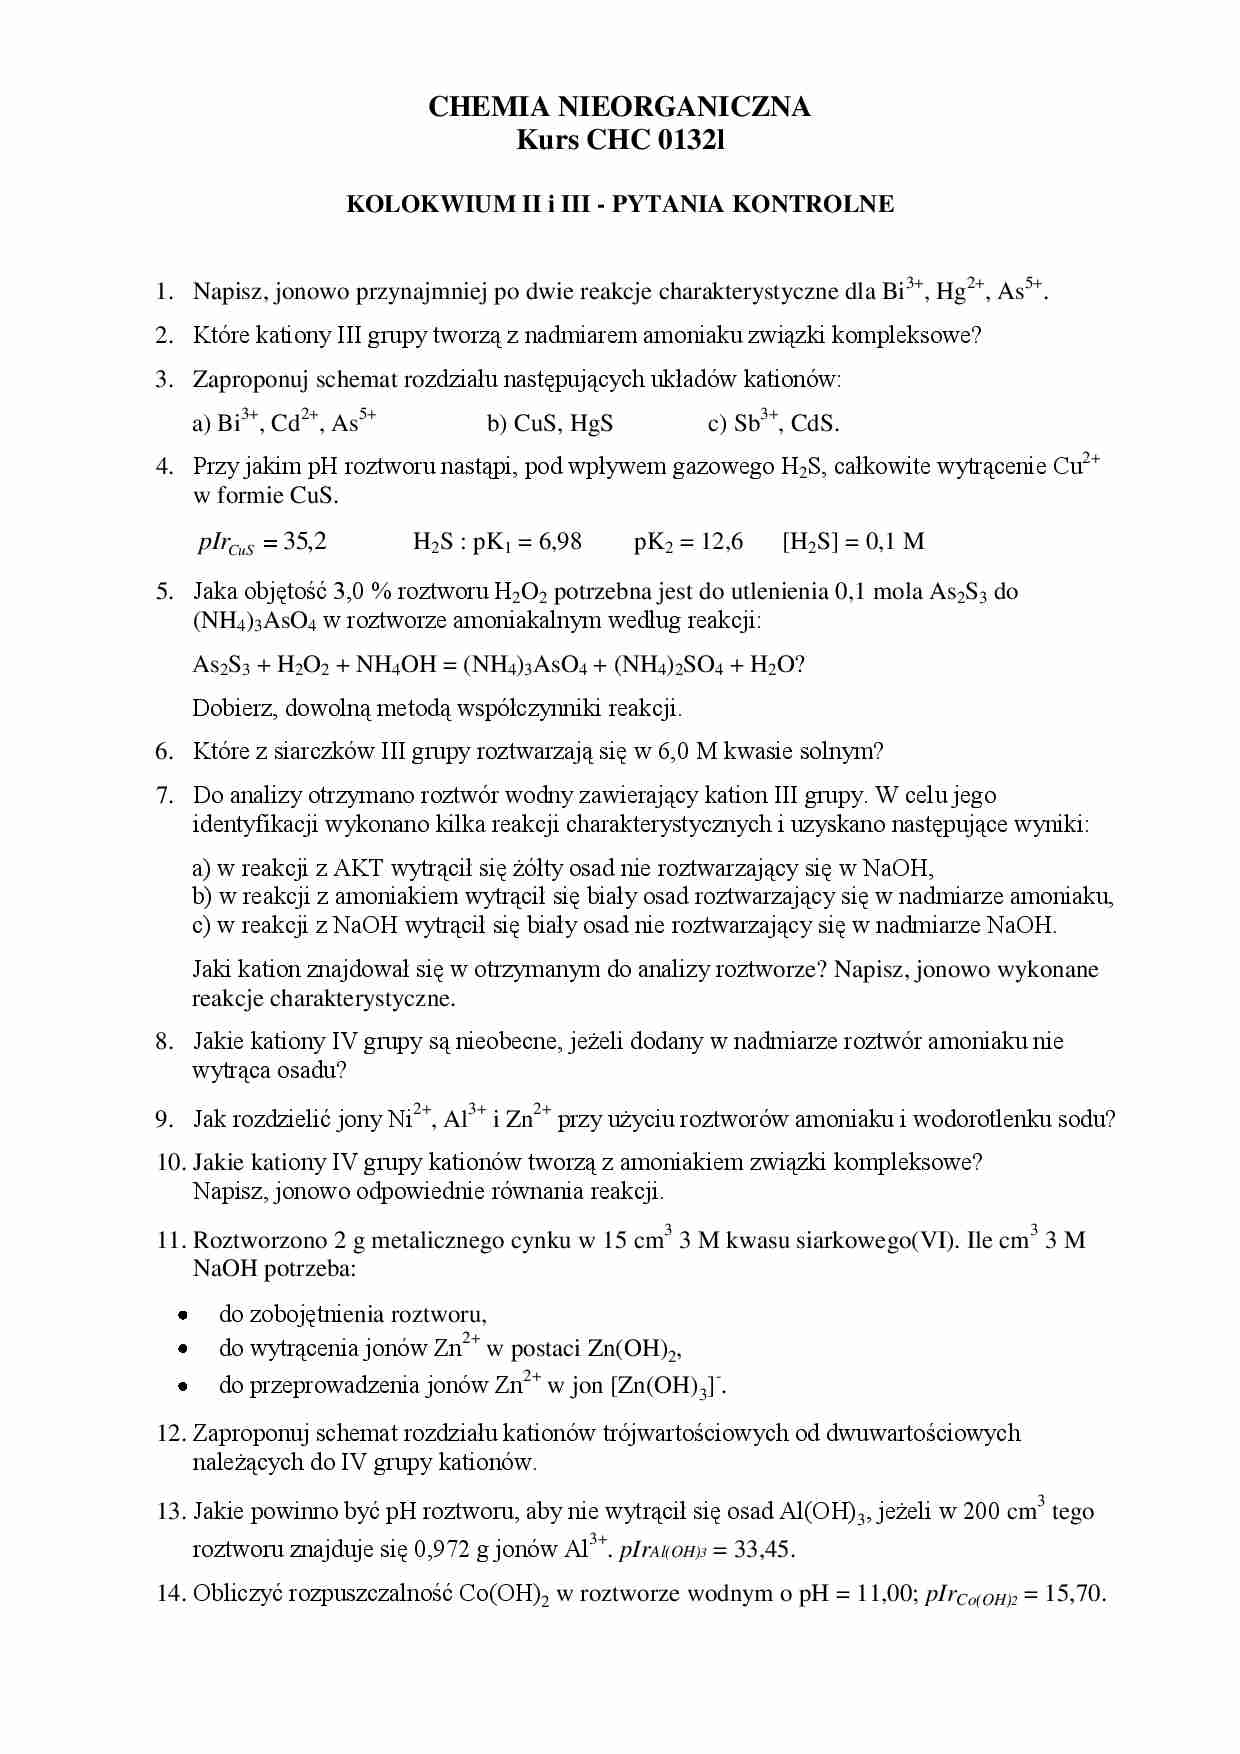 Chemia nieorganiczna laboratorium - Pytania kontrolne - strona 1